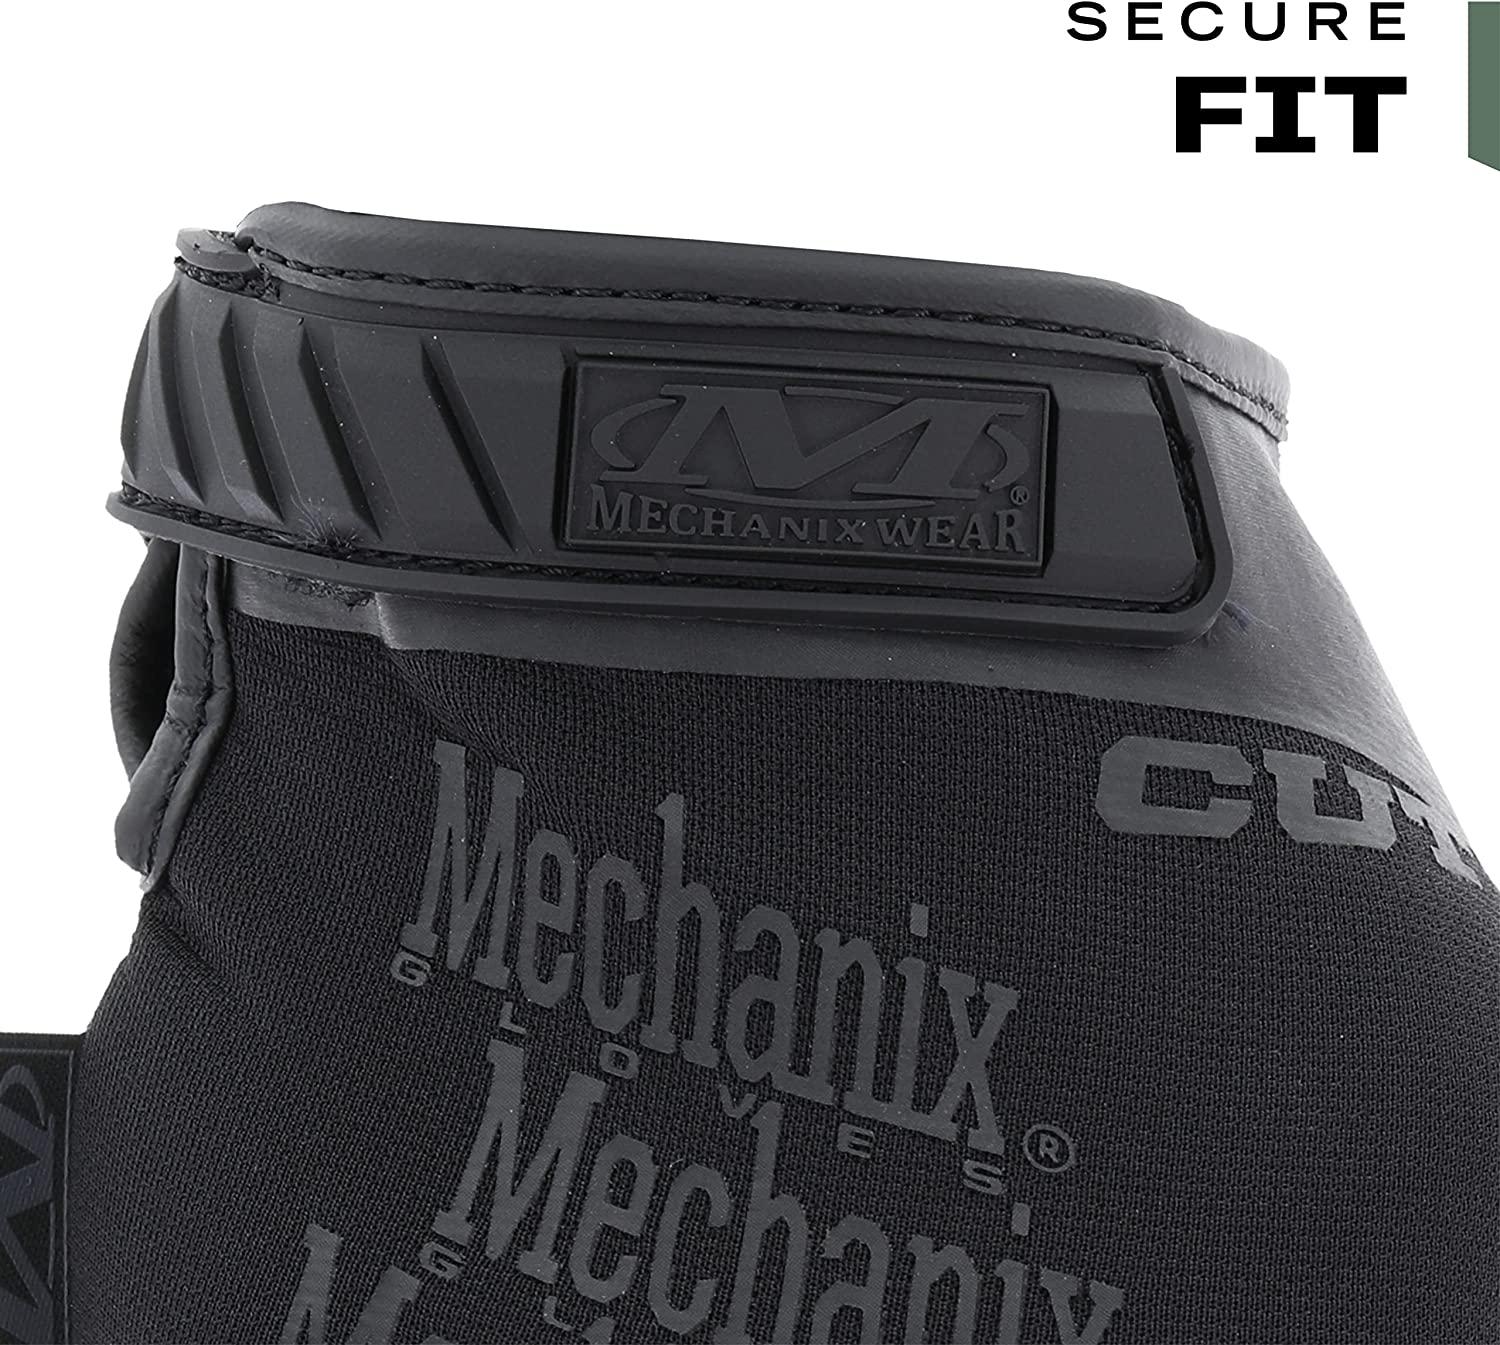 Mechanix Wear: M-Pact Leather Framer Work Gloves - Fingerless